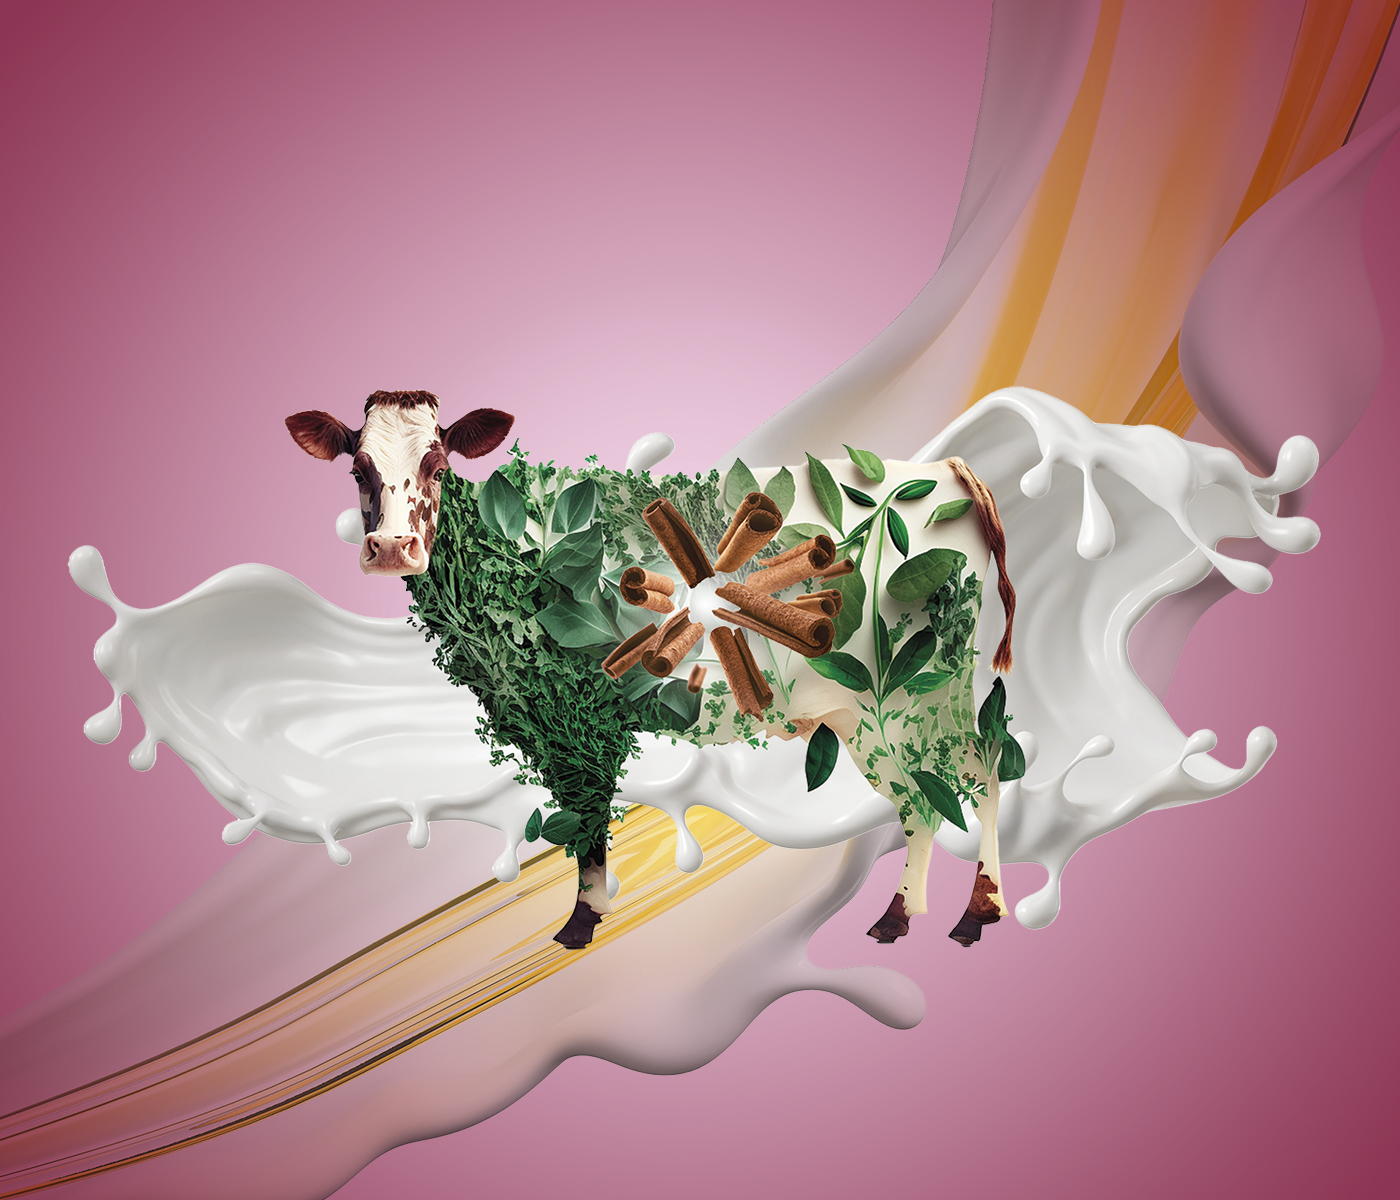 Dairy calf nutrition: Inclusion of Essential Oils as Enhancers